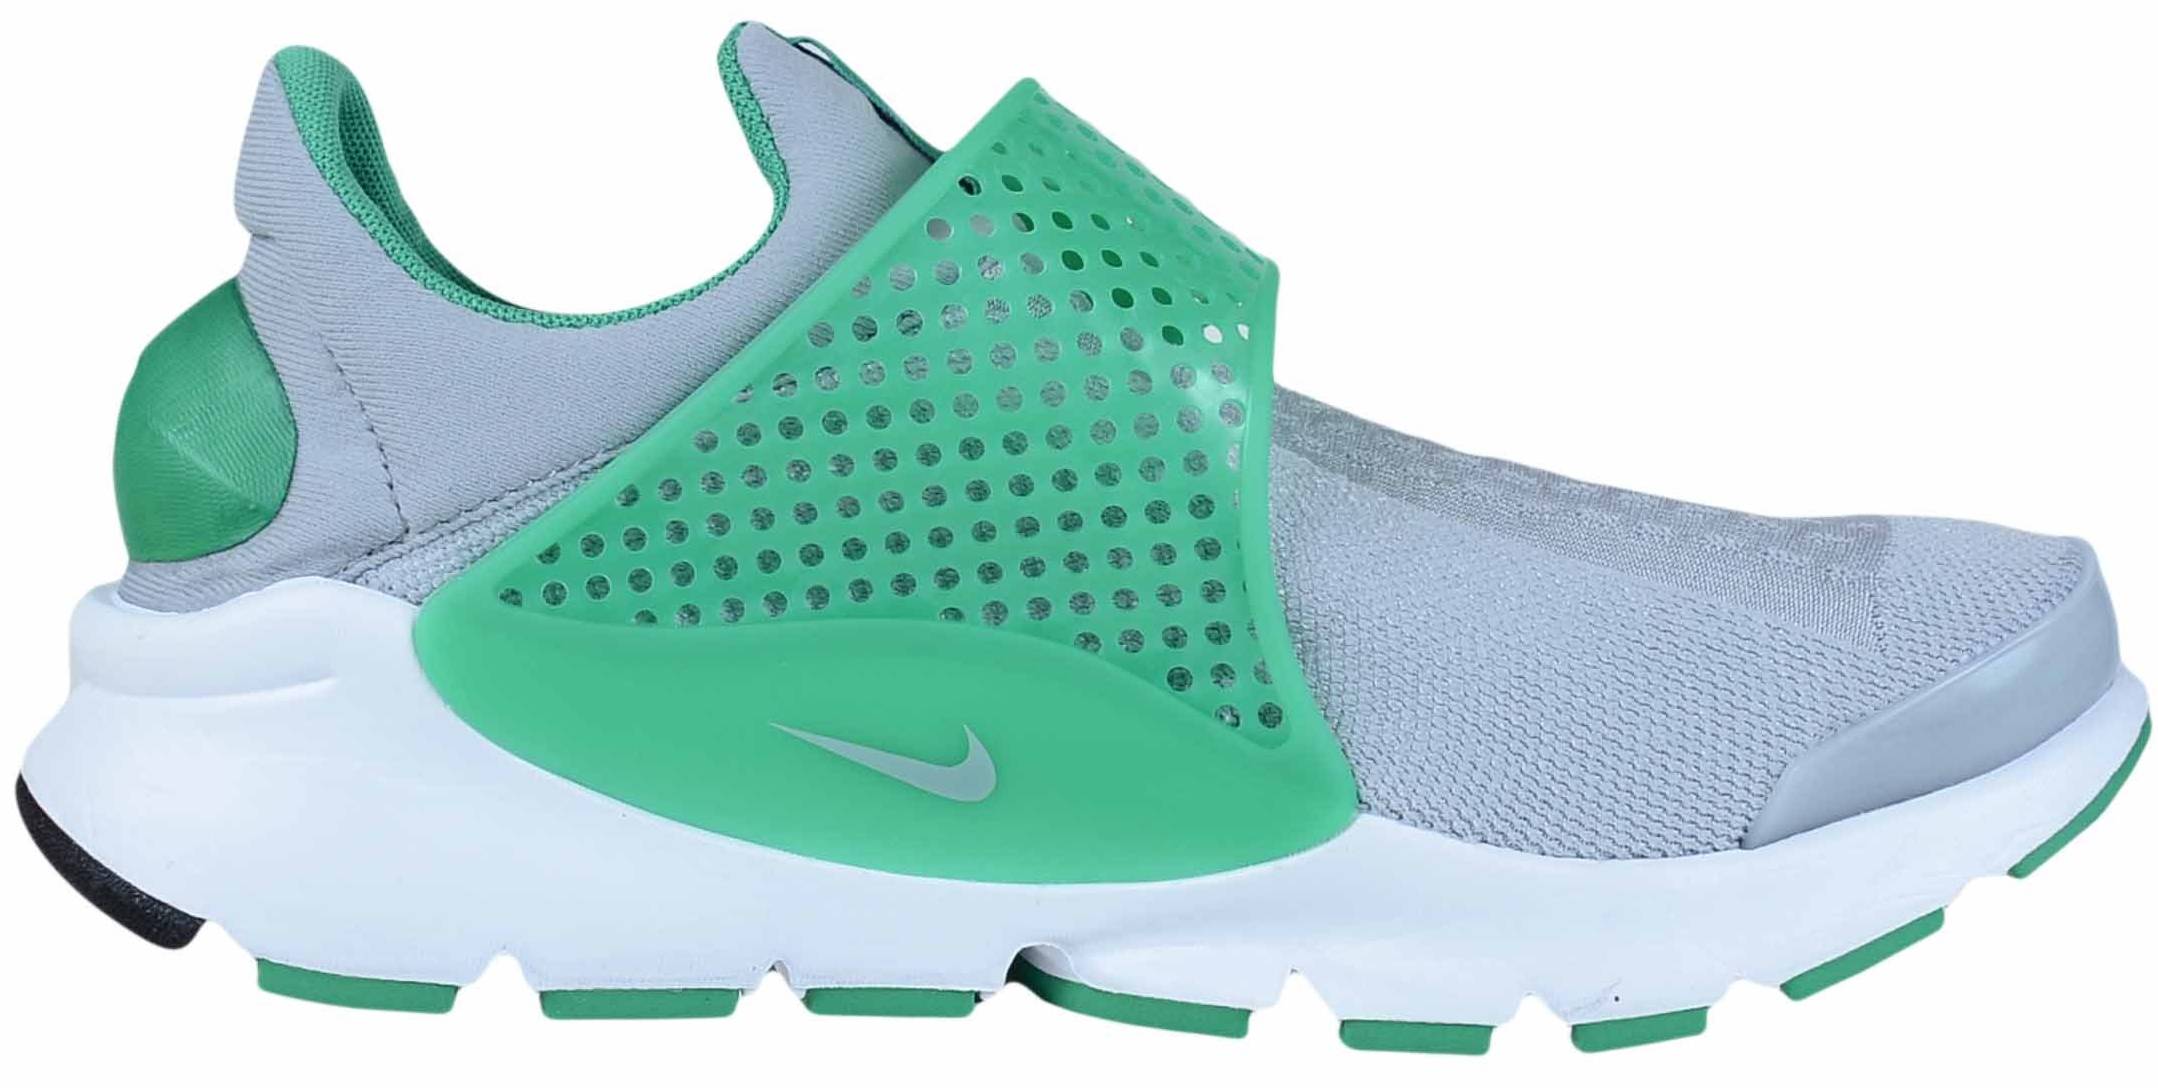 Nike Sock Dart sneakers in 3 colors (only $100) | RunRepeat